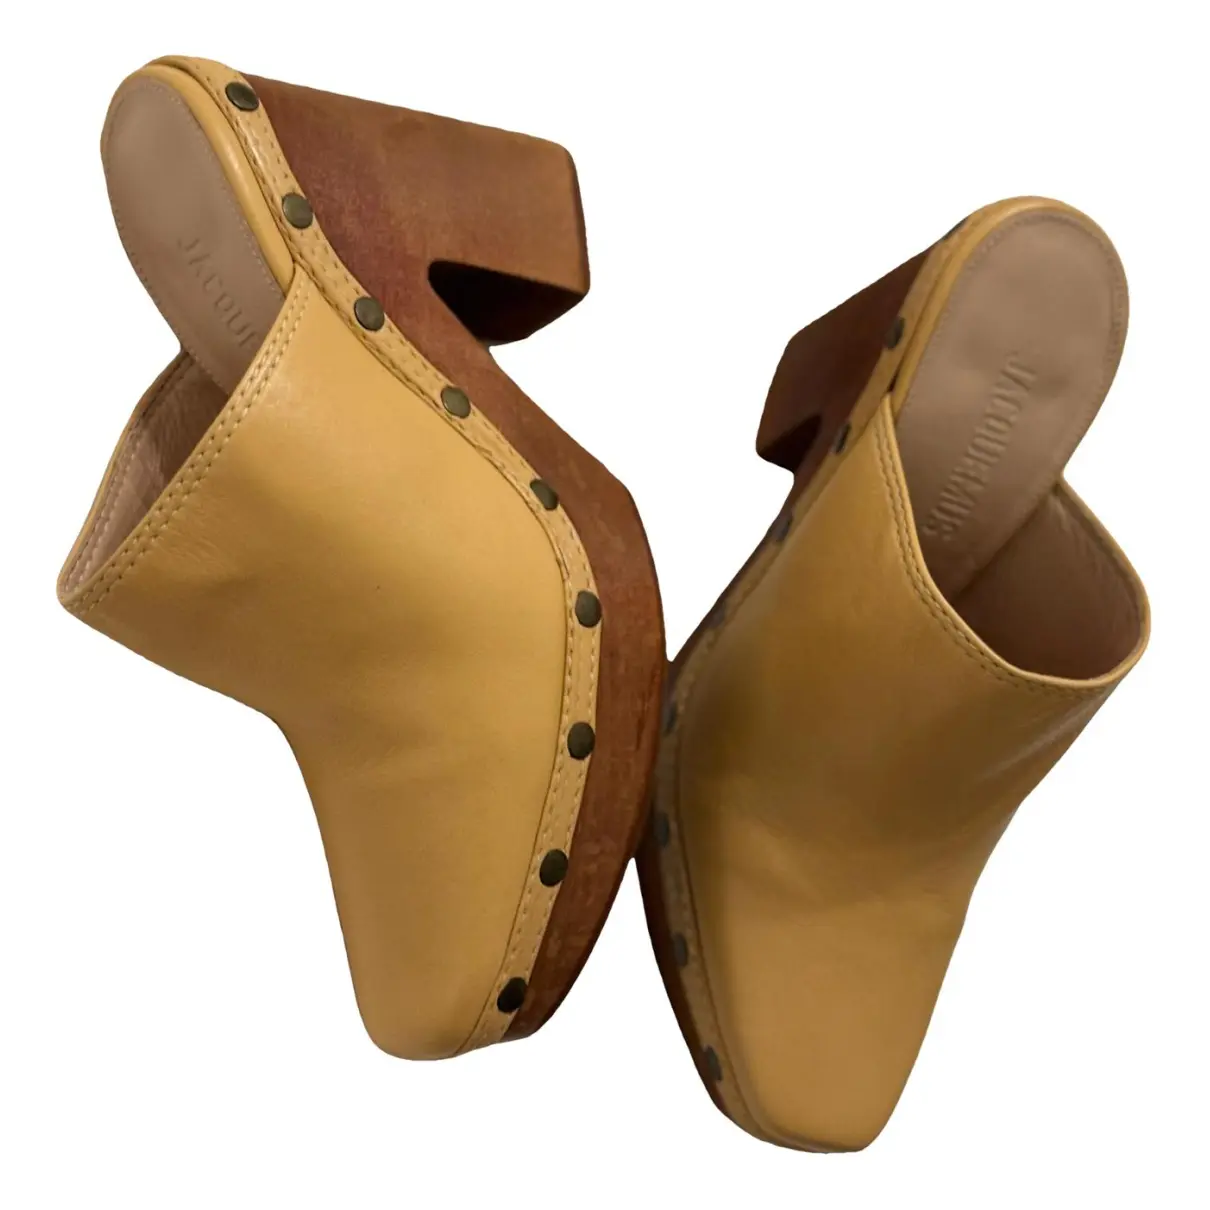 Les Sabots patent leather mules & clogs